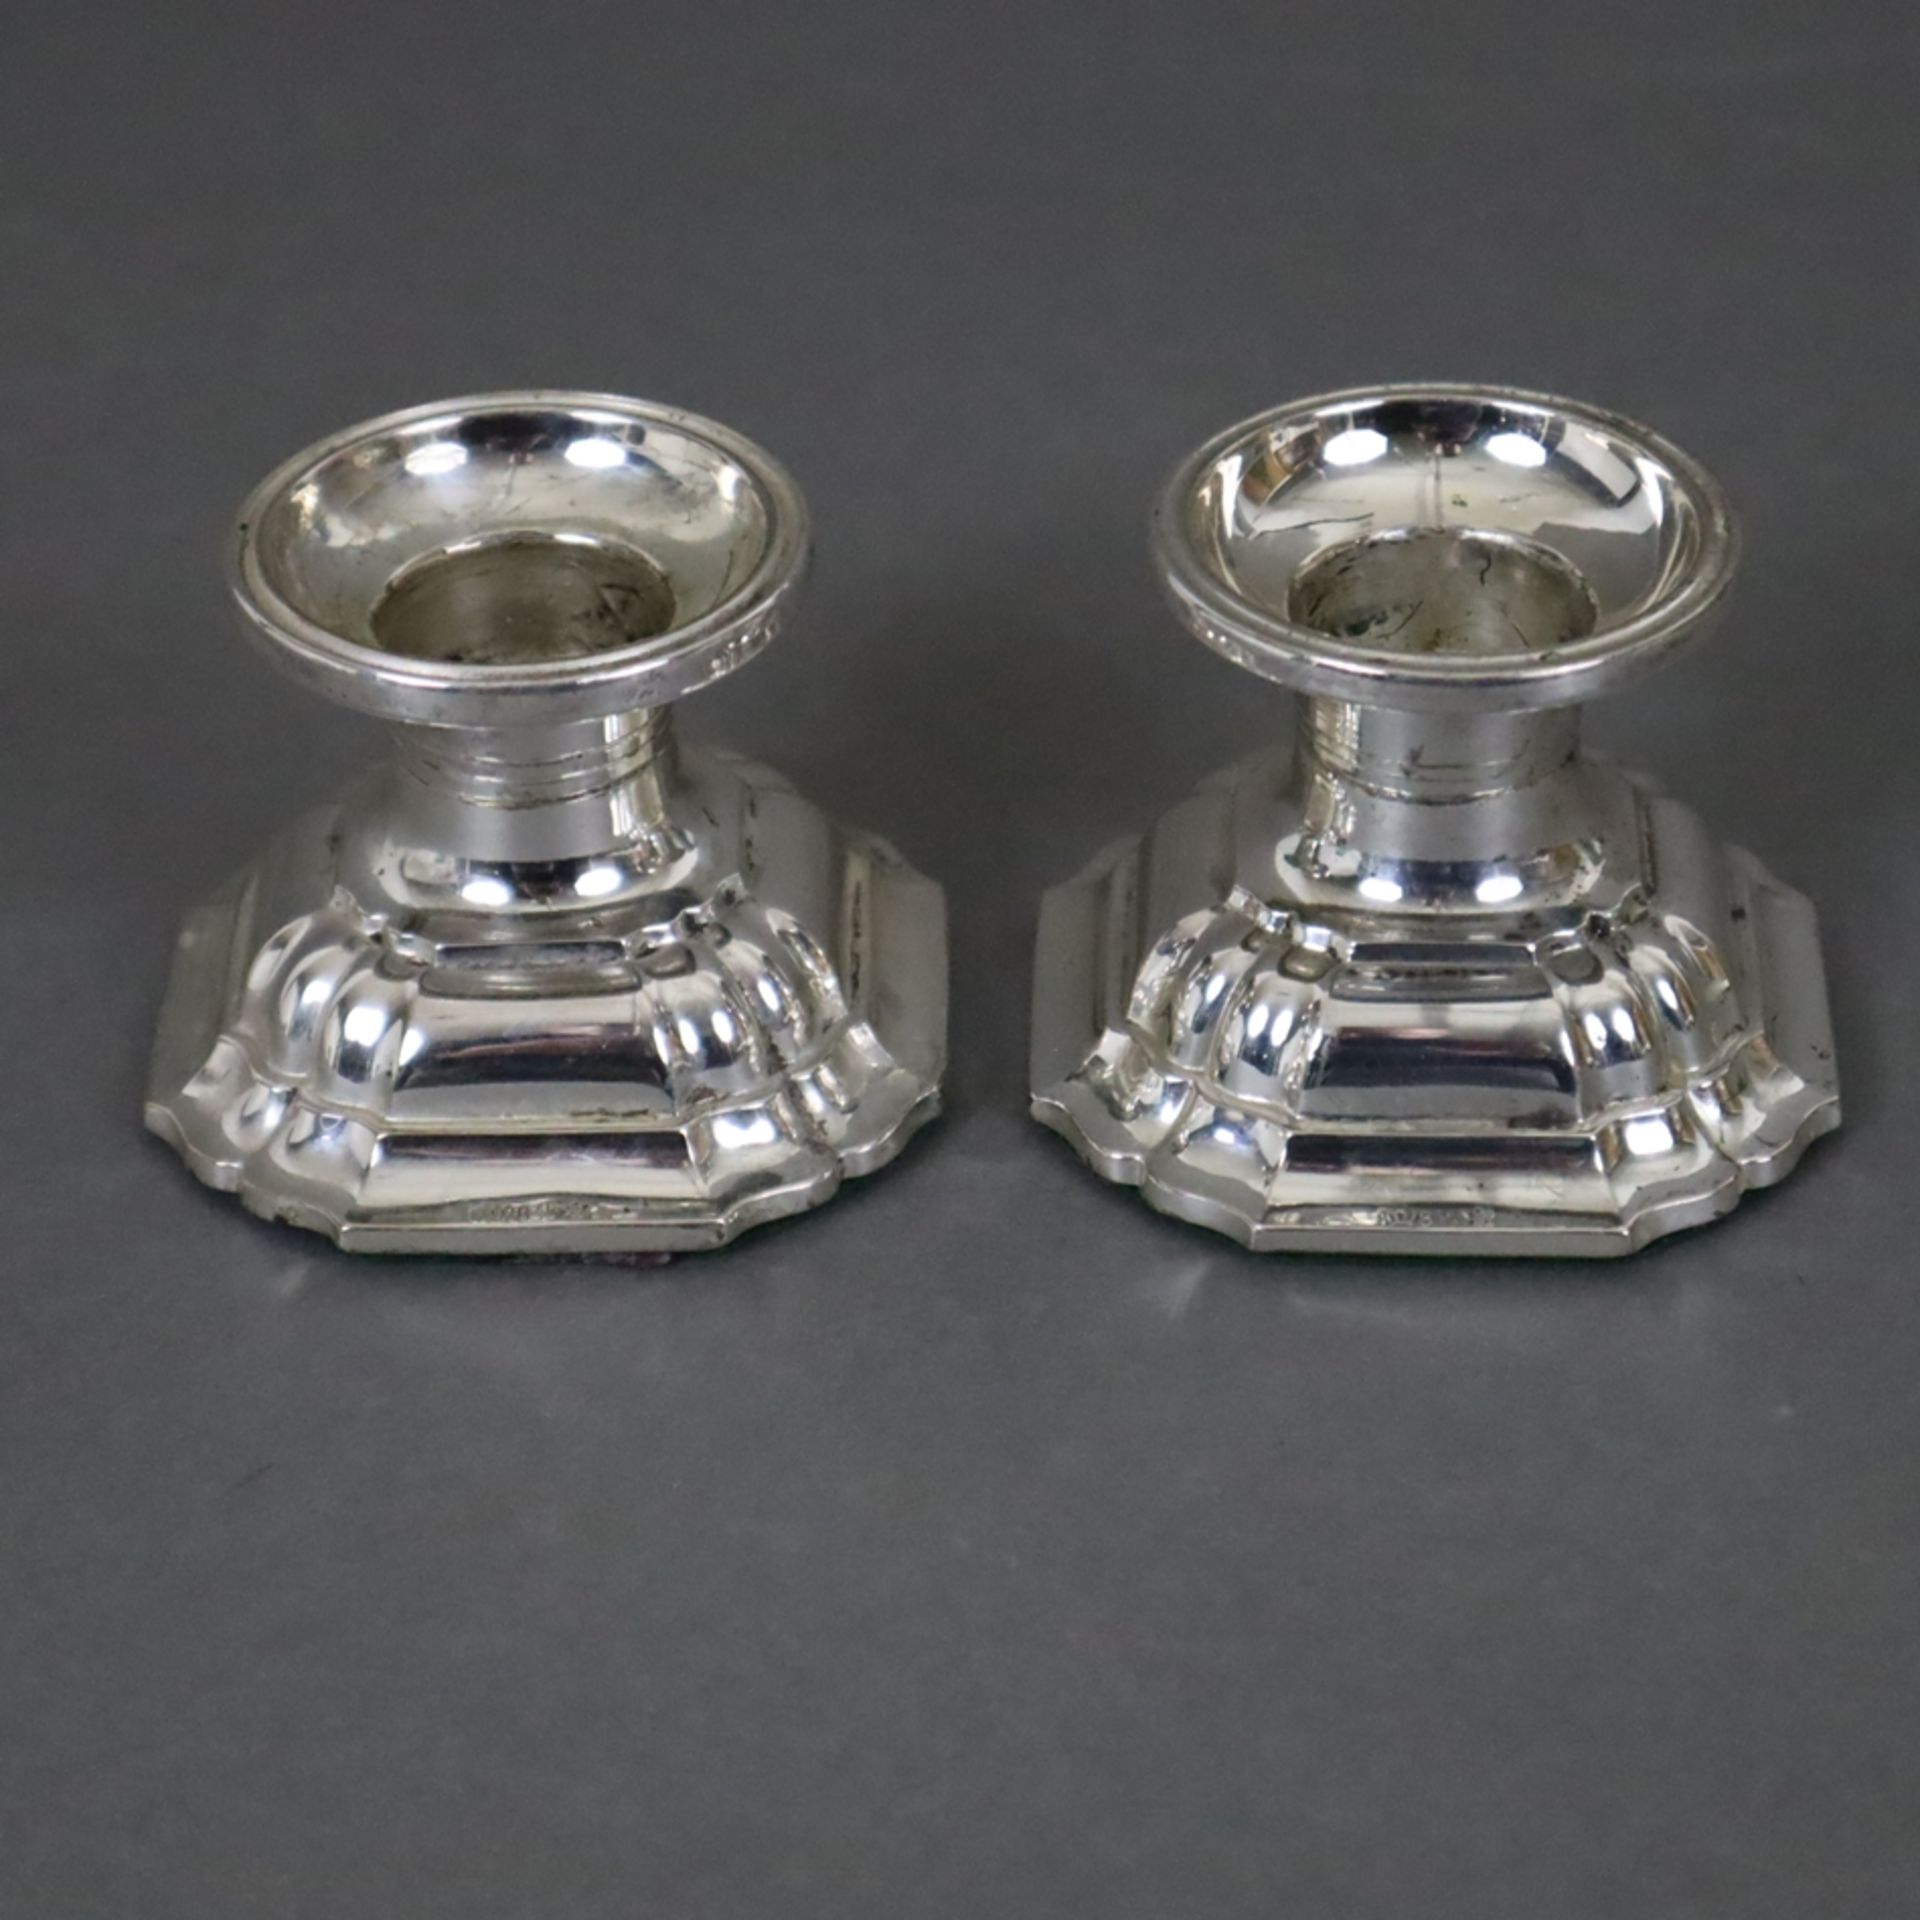 Ein Paar Kerzenleuchter - 835er Silber, runde Tülle, getreppter Stand mit passig eingezogenen Ecken